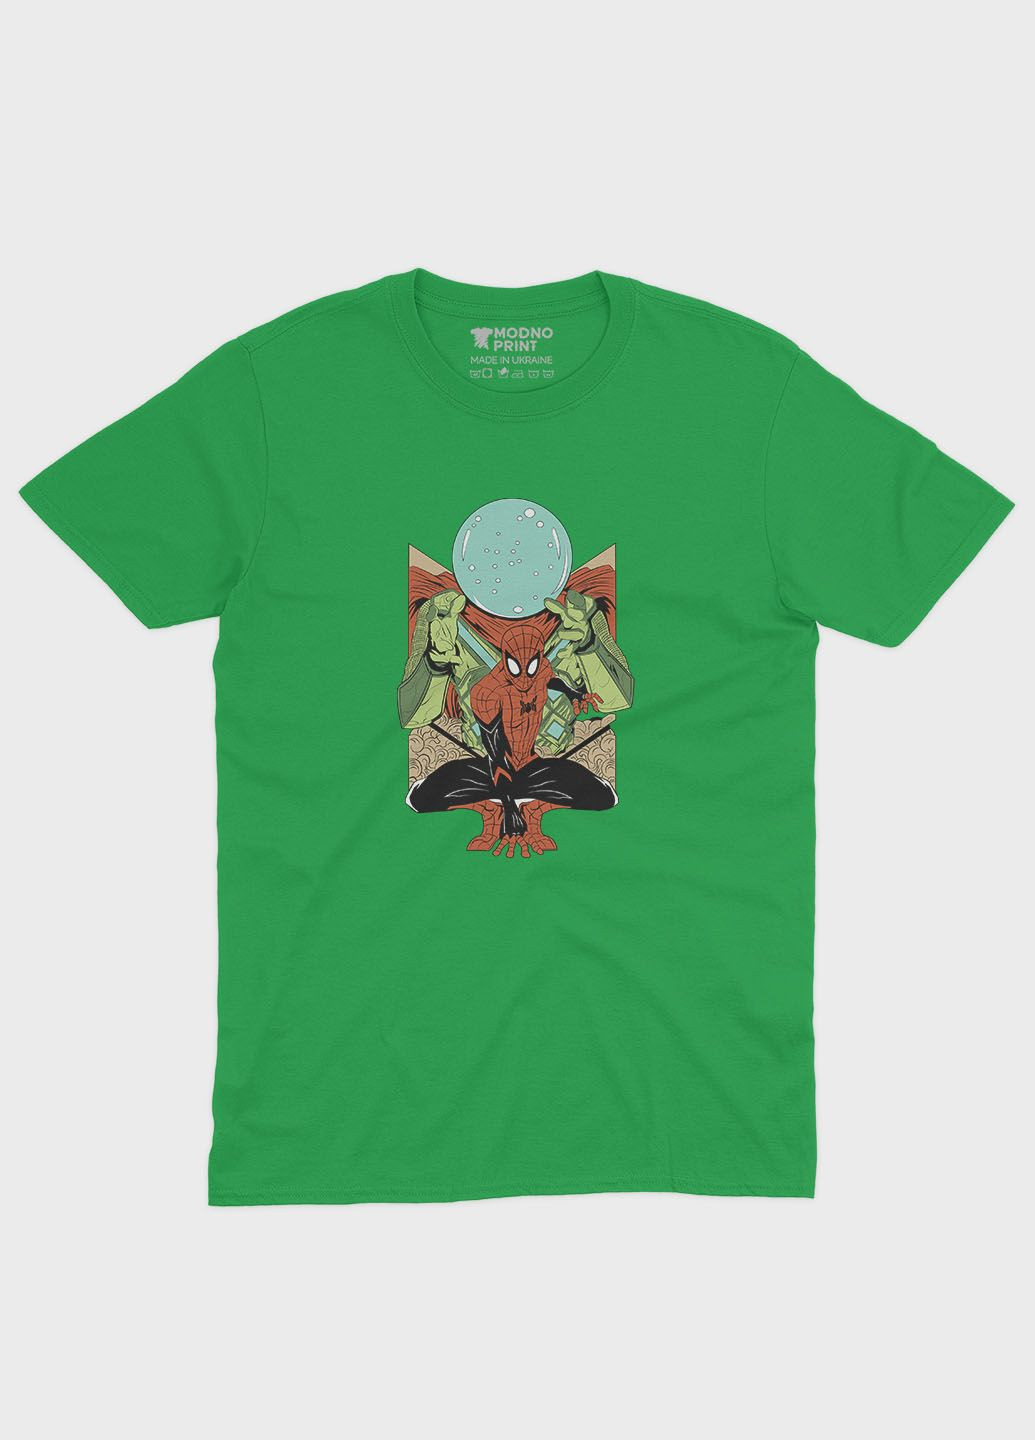 Зеленая демисезонная футболка для девочки с принтом супергероя - человек-паук (ts001-1-keg-006-014-020-g) Modno